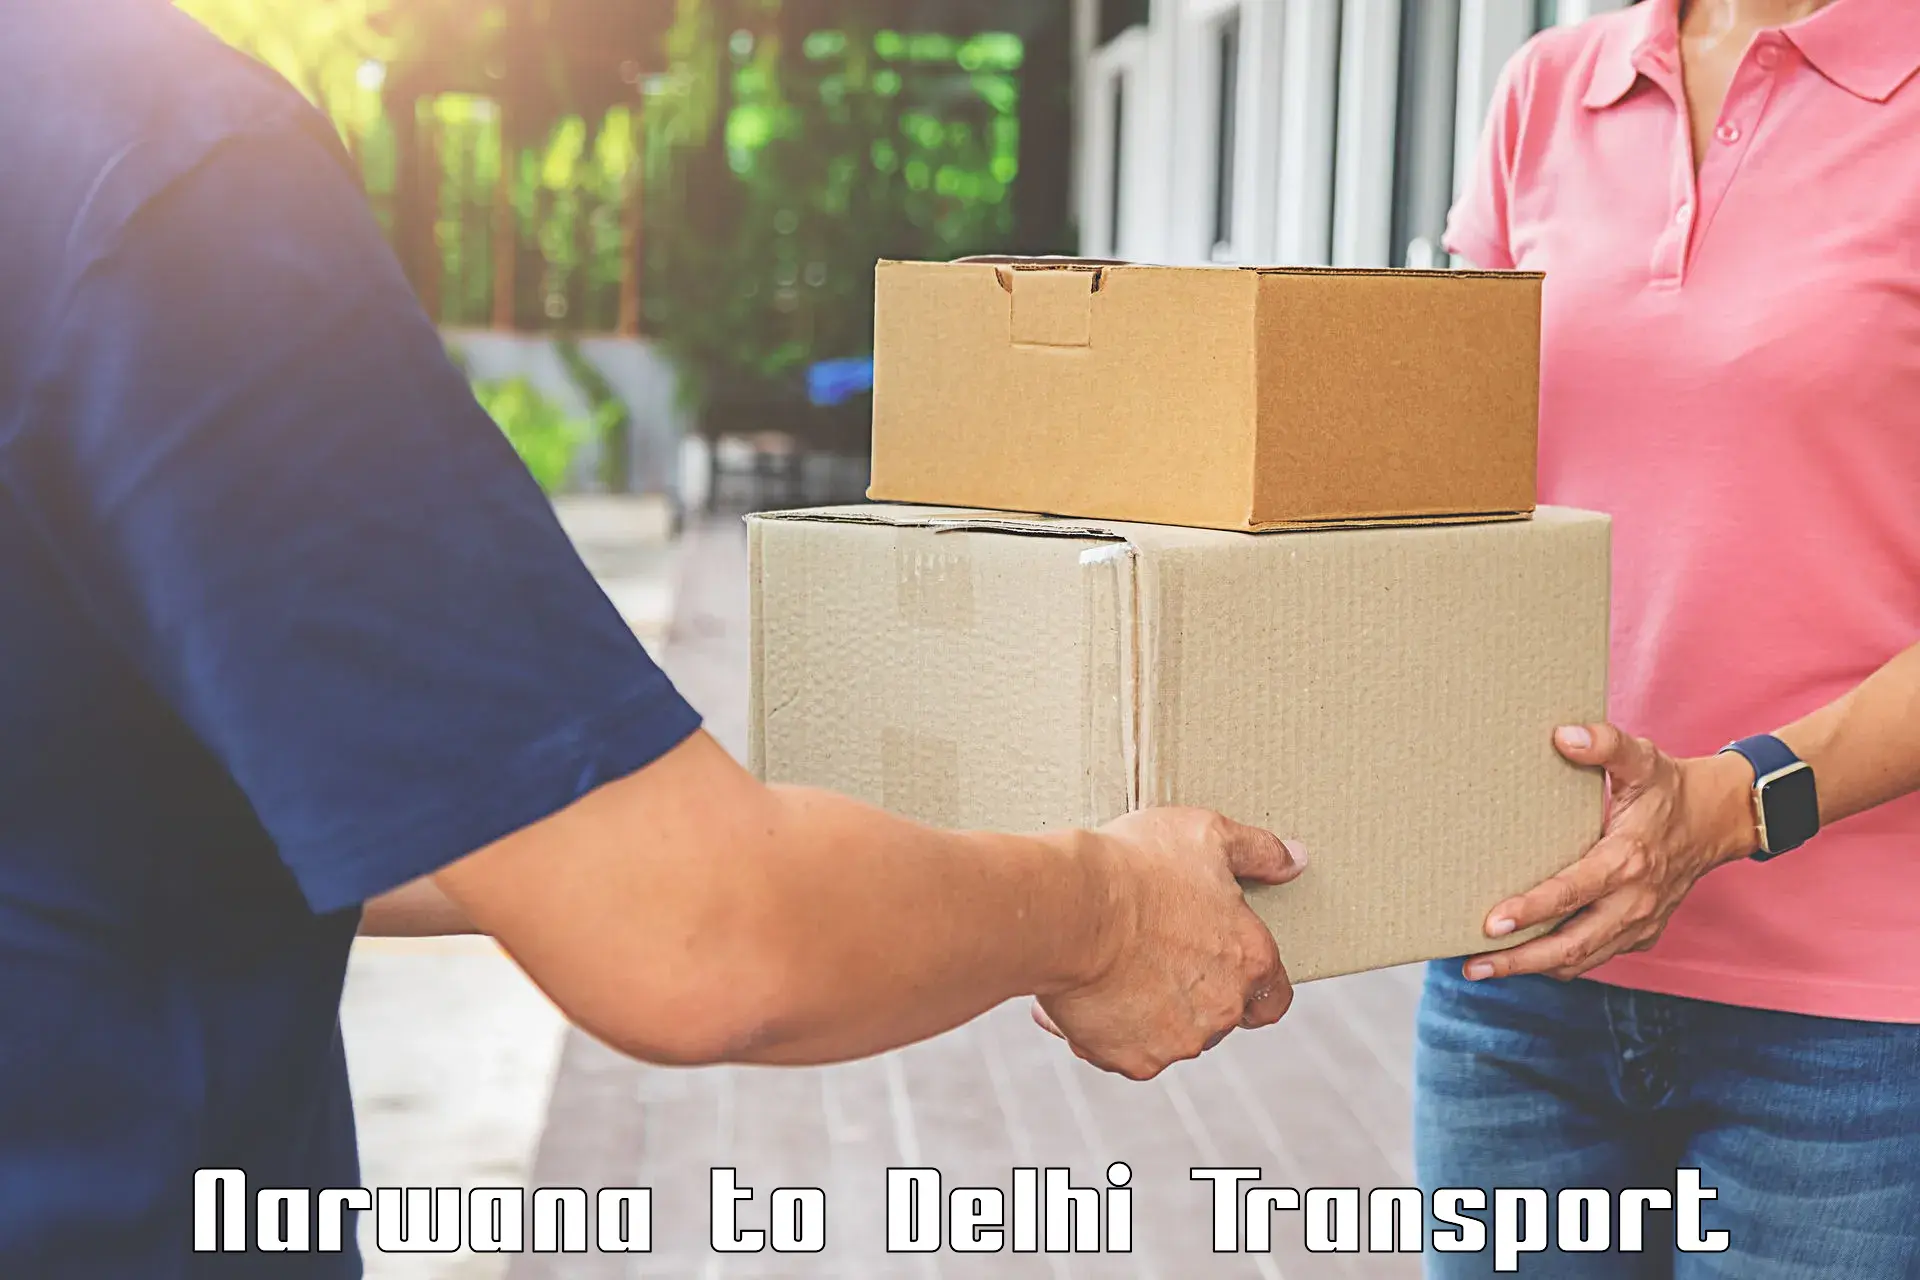 Cycle transportation service Narwana to IIT Delhi